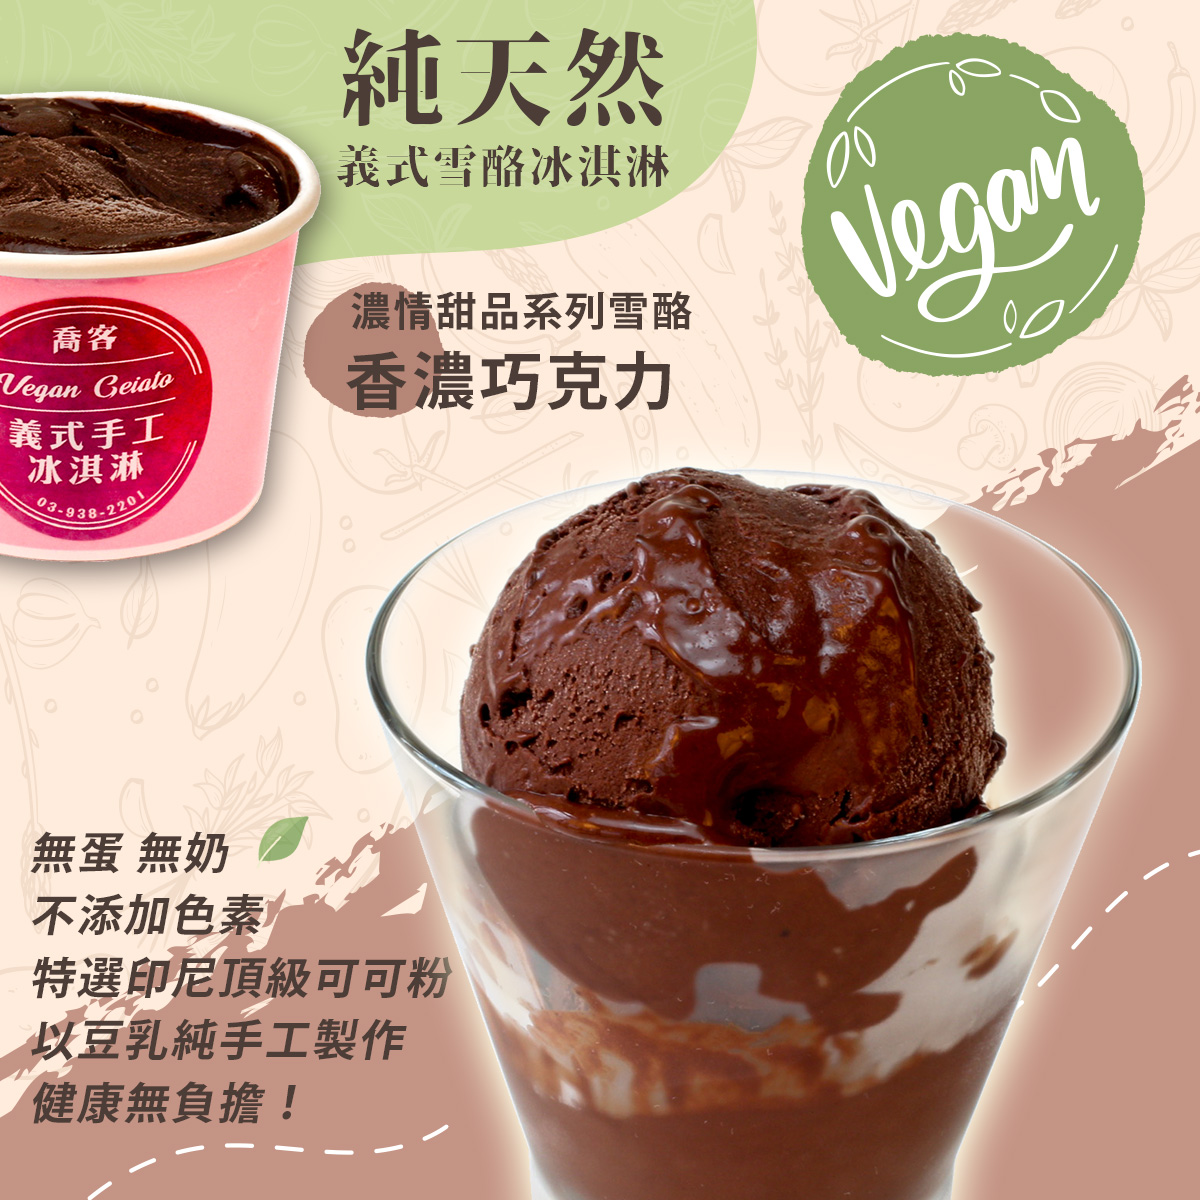 【喬客】濃情甜品系列雪酪-香濃巧克力 冰淇淋